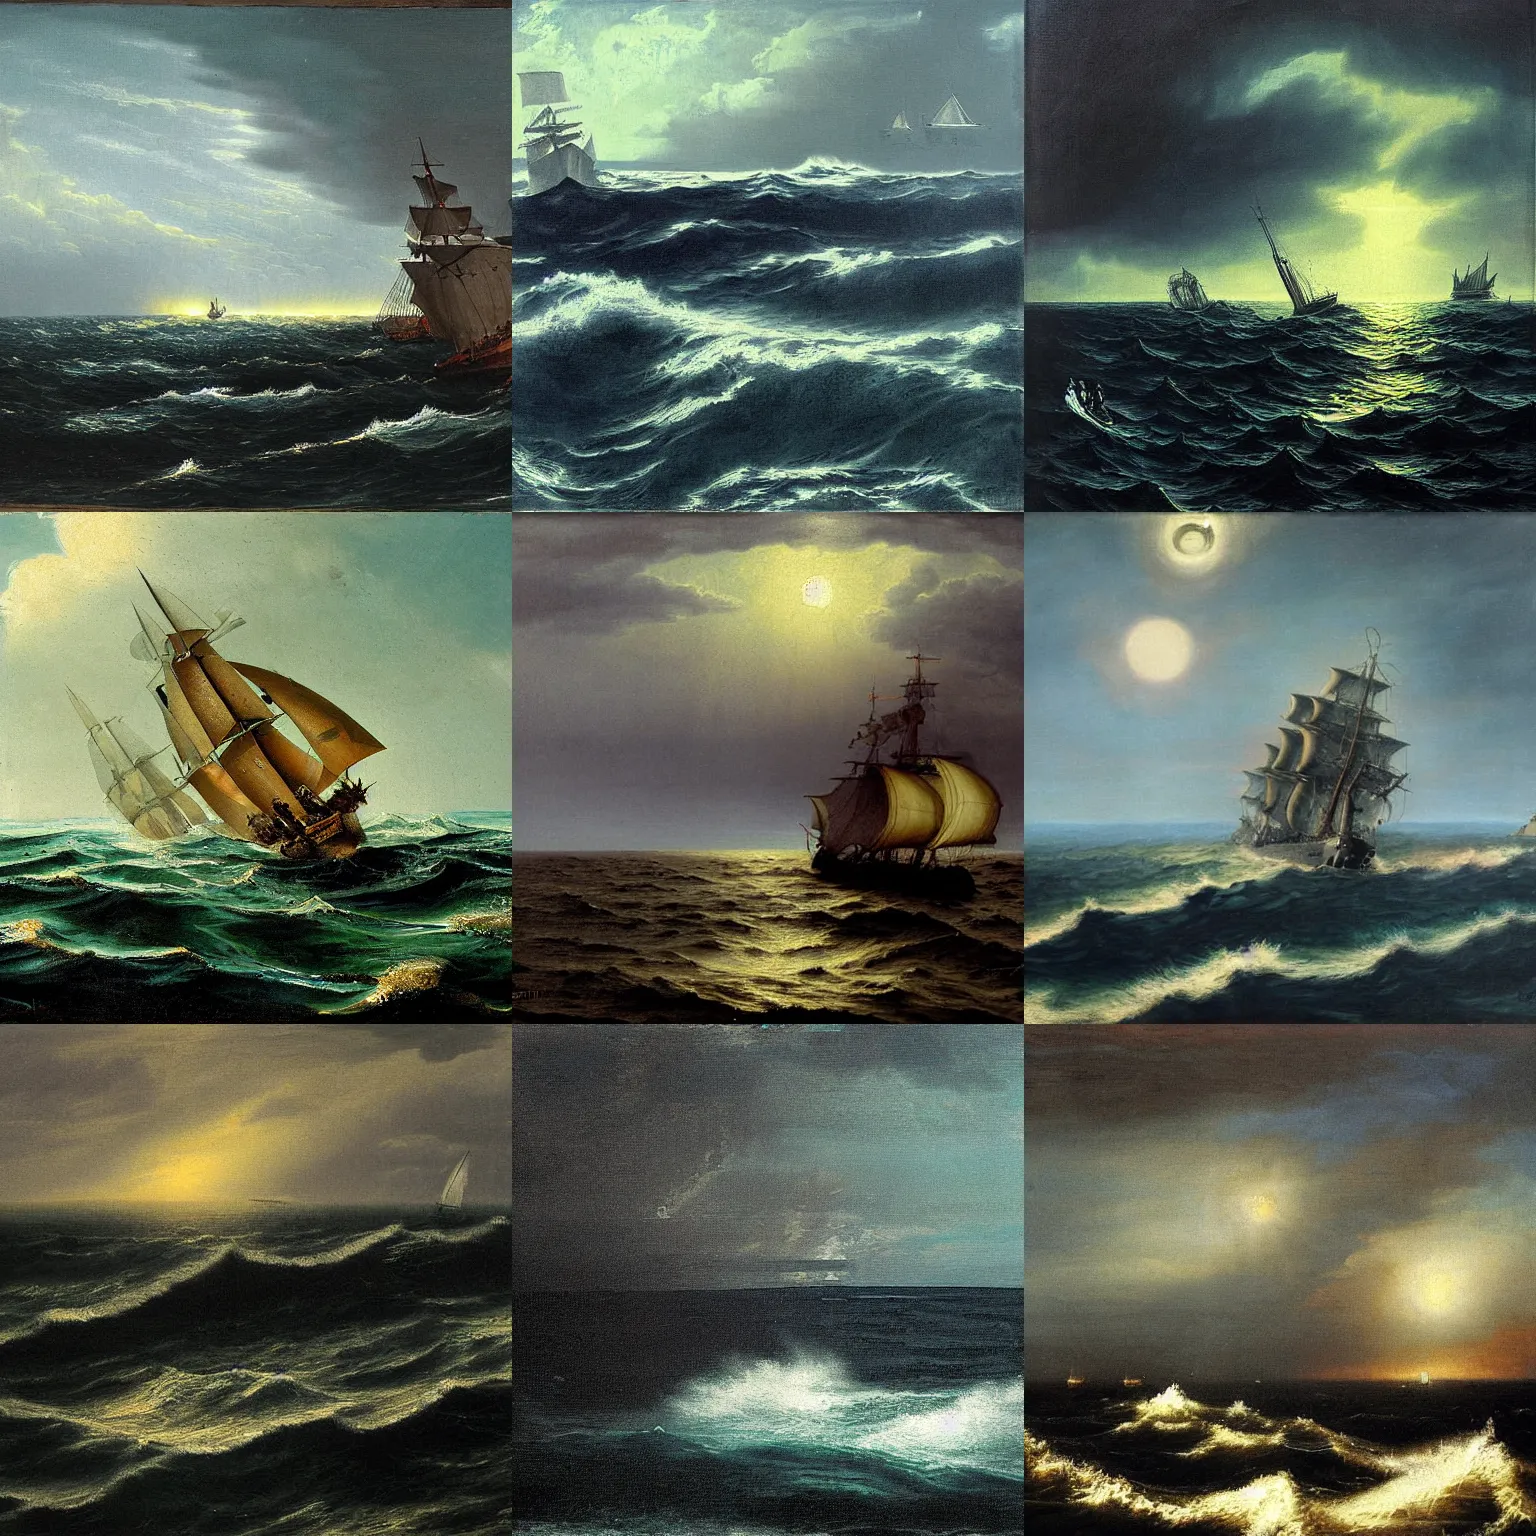 Prompt: painting dark ocean by ivan konstantinovich